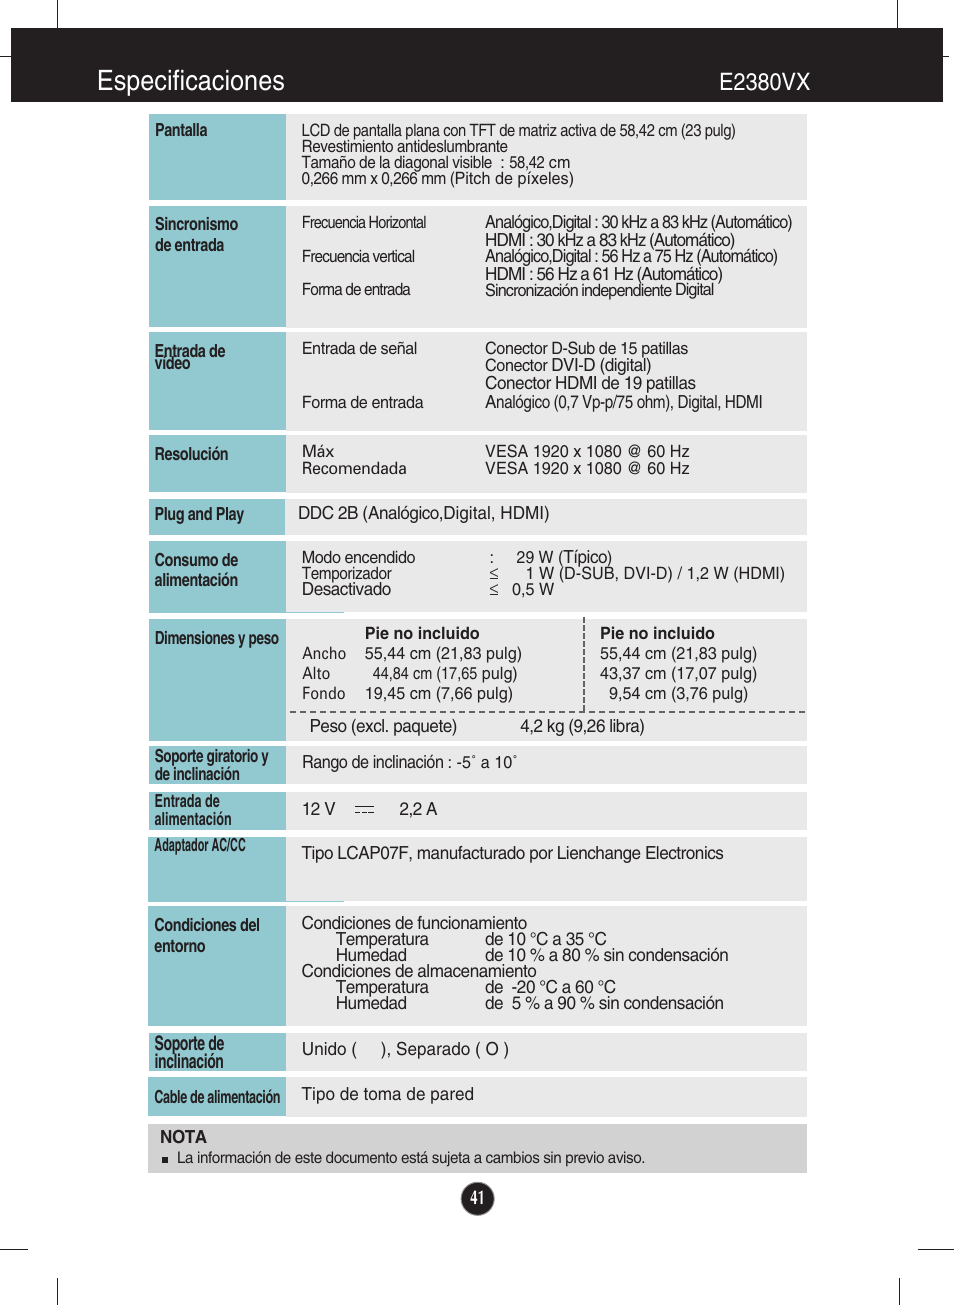 E2380vx, Especificaciones | LG E2380VX-PN Manual del usuario | Página 42 / 44